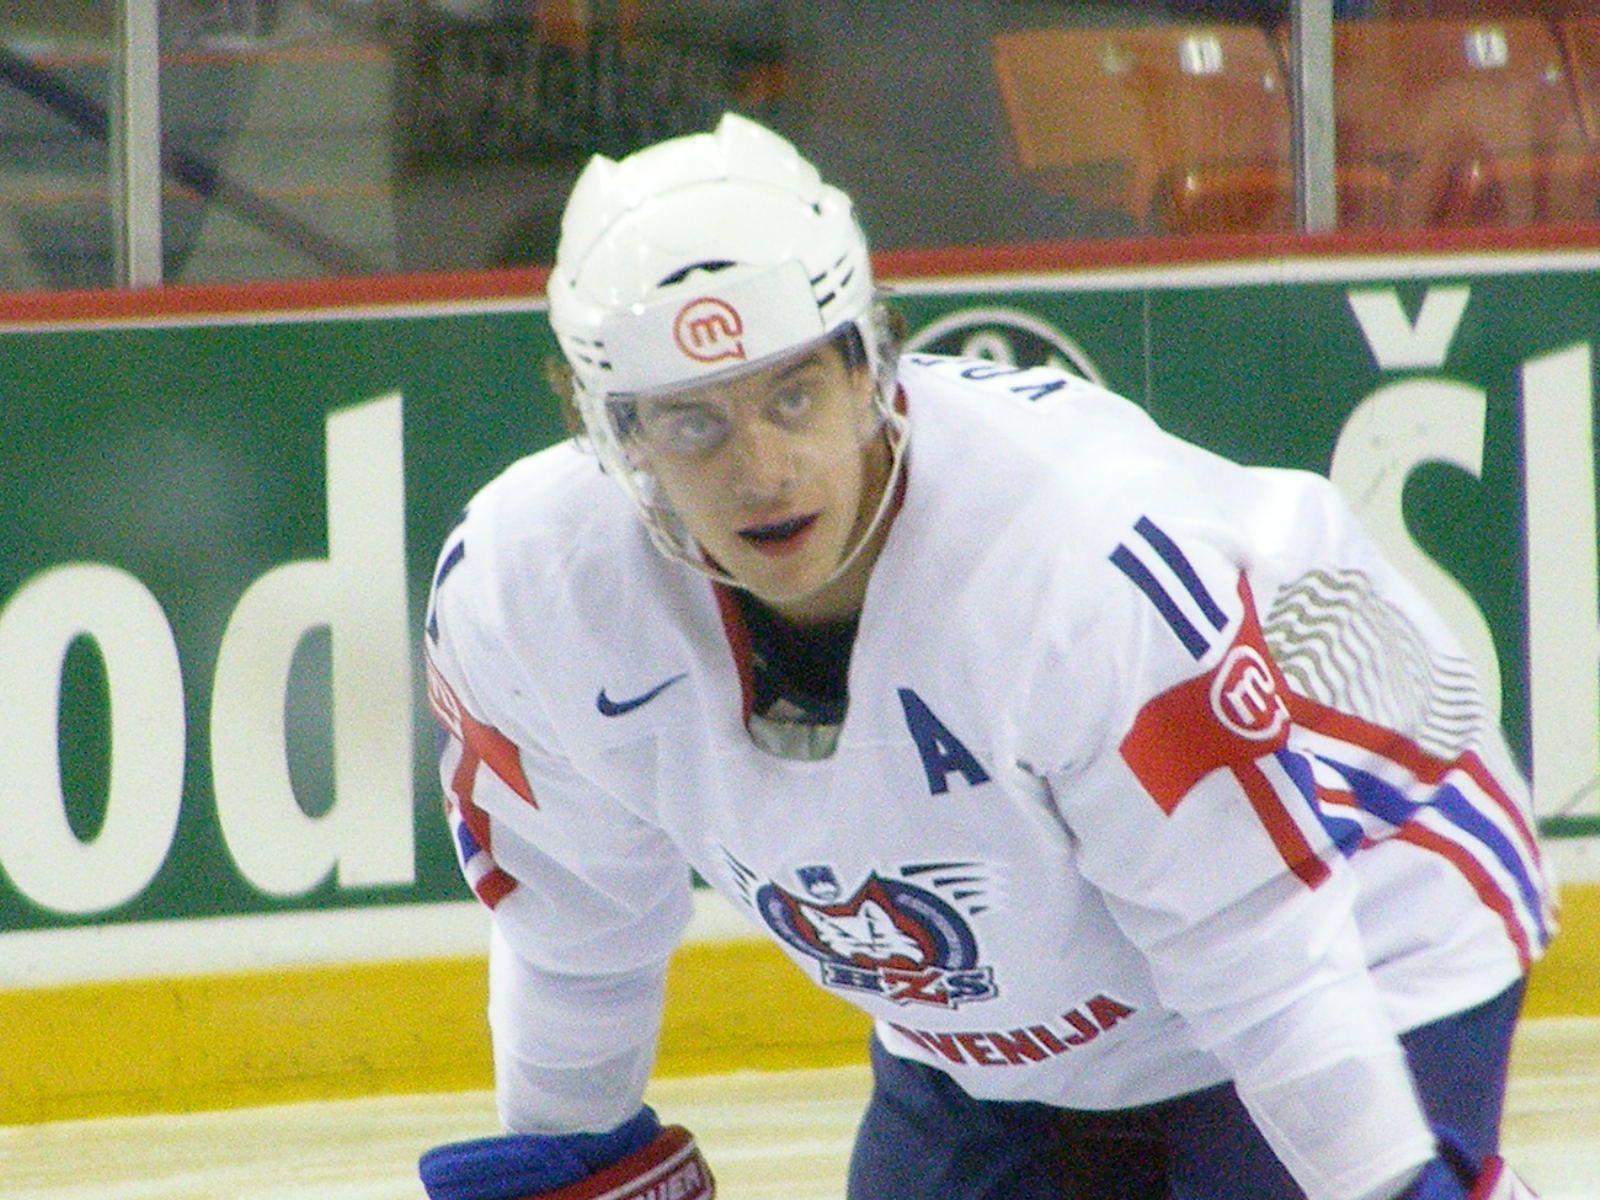 Slovenia VS USA at the IIHF World Hockey Championship 2008